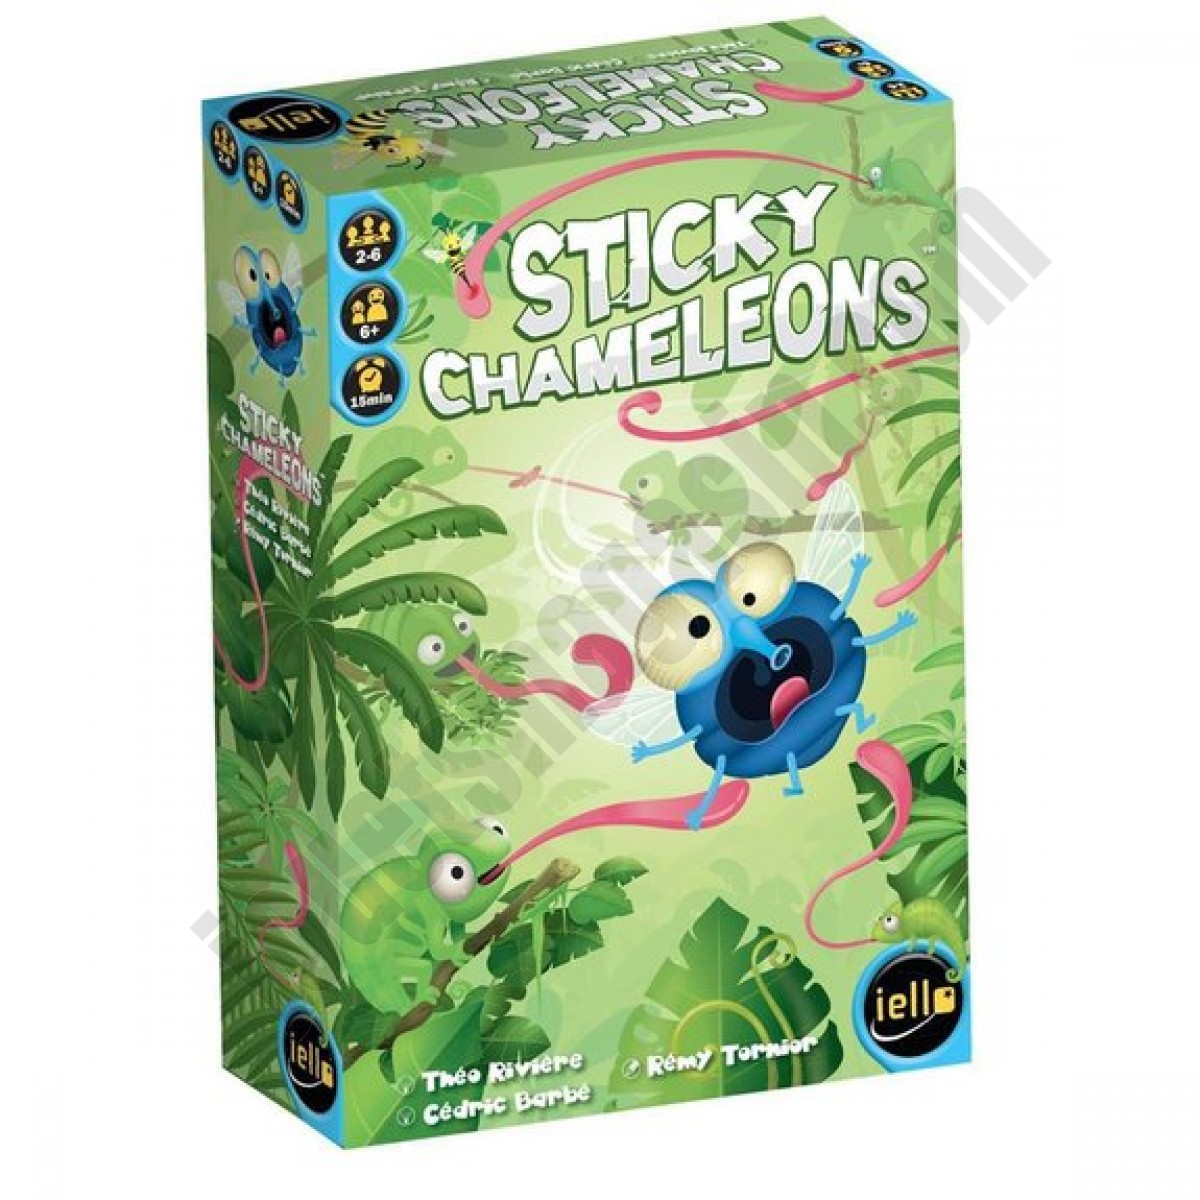 Sticky chameleons ◆◆◆ Nouveau - Sticky chameleons ◆◆◆ Nouveau